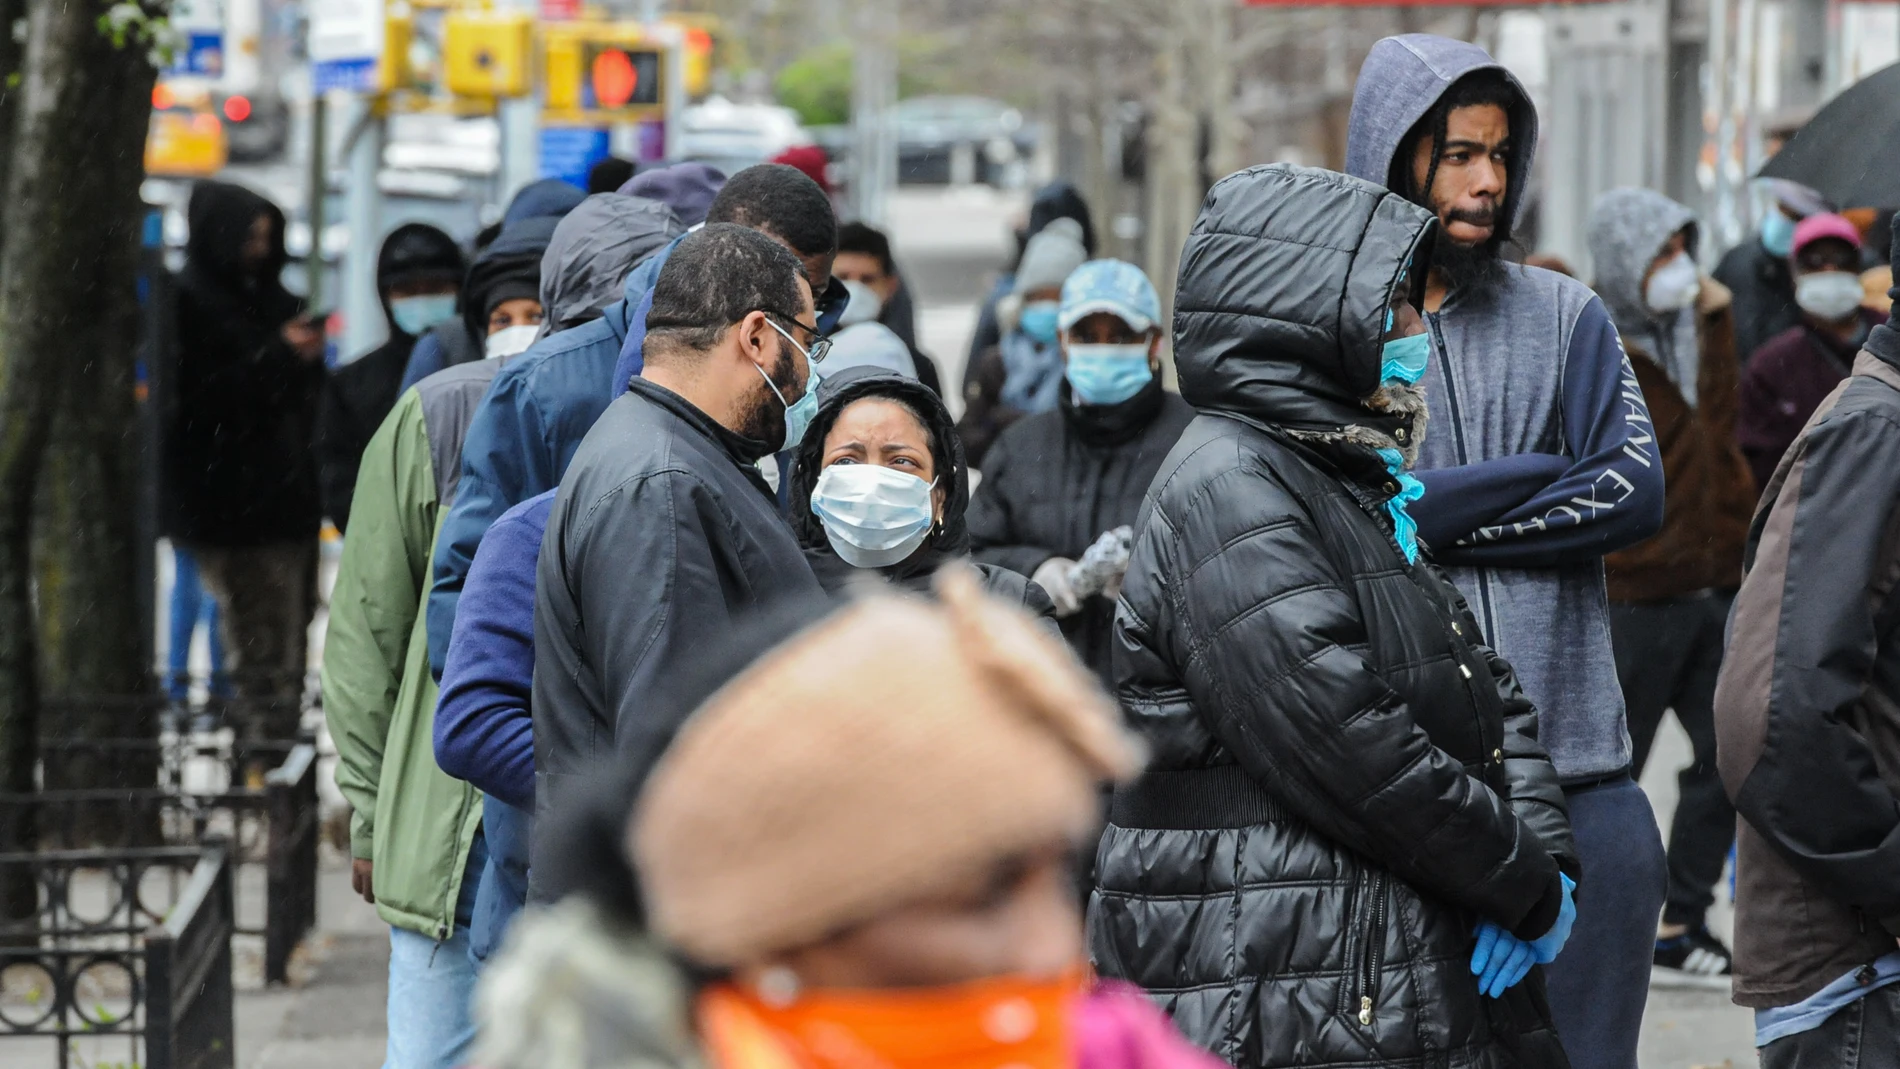 Las autoridades locales urgen a la población que lleven máscaras si salen a la calle